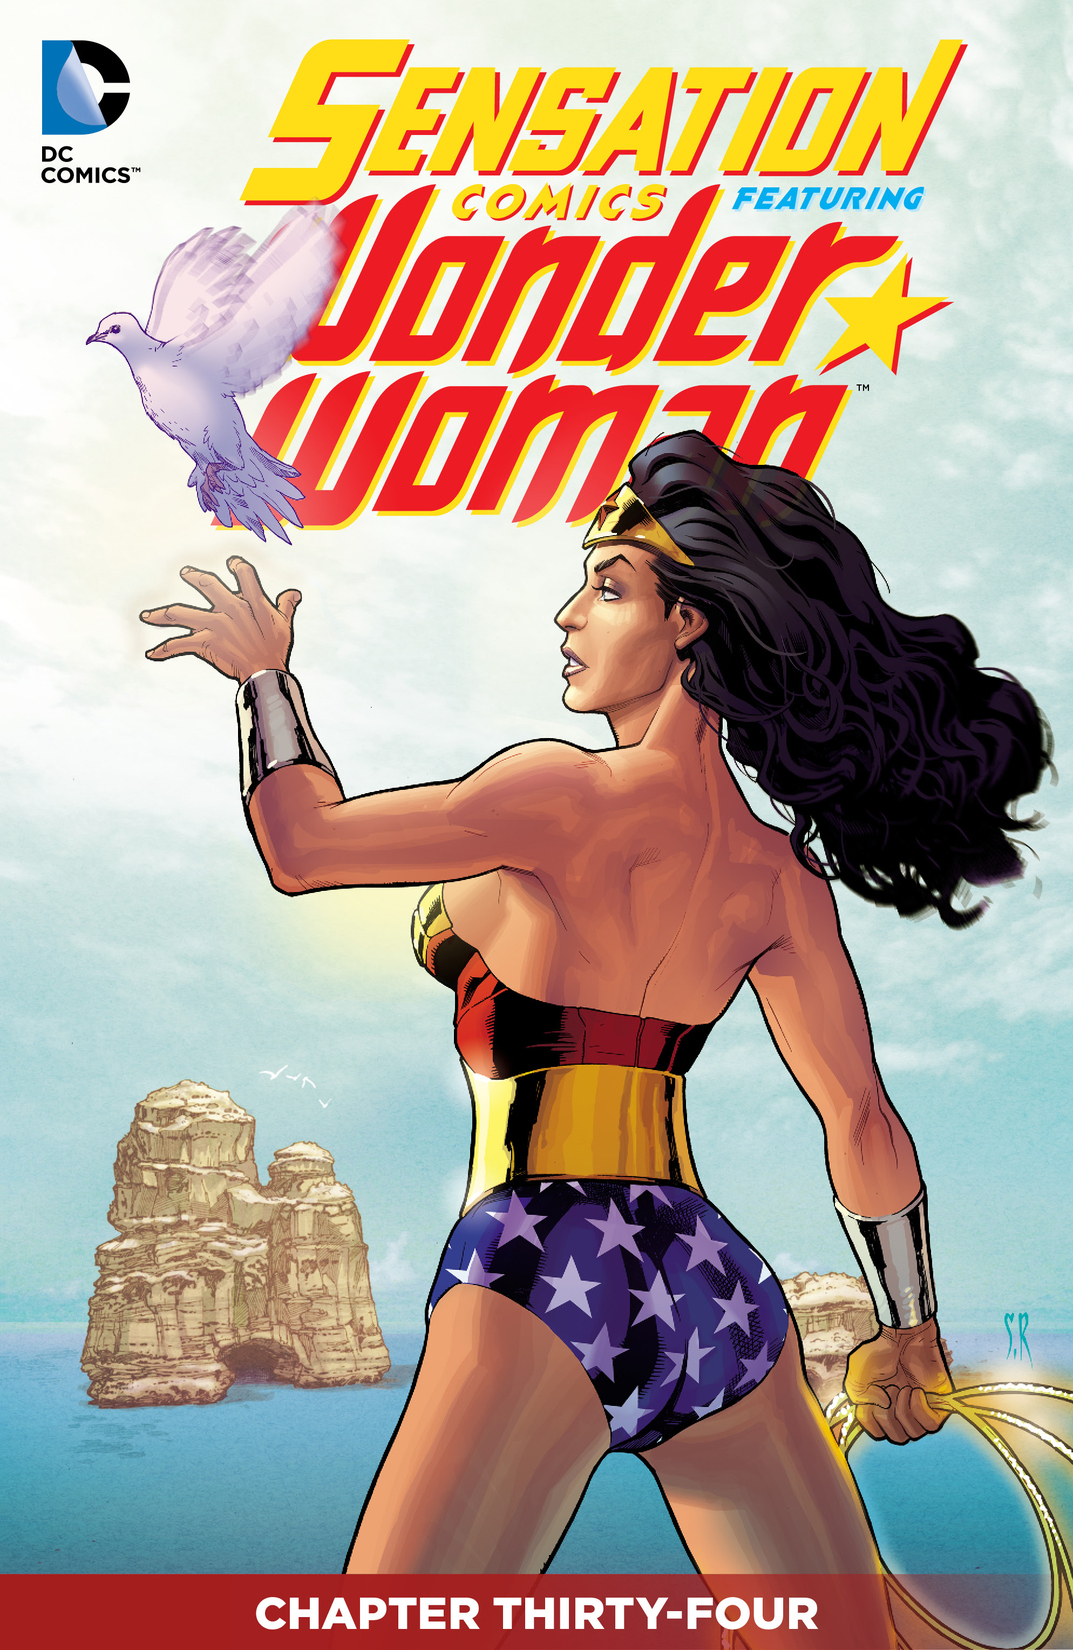 Sensation Comics Featuring Wonder Woman #34 preview images